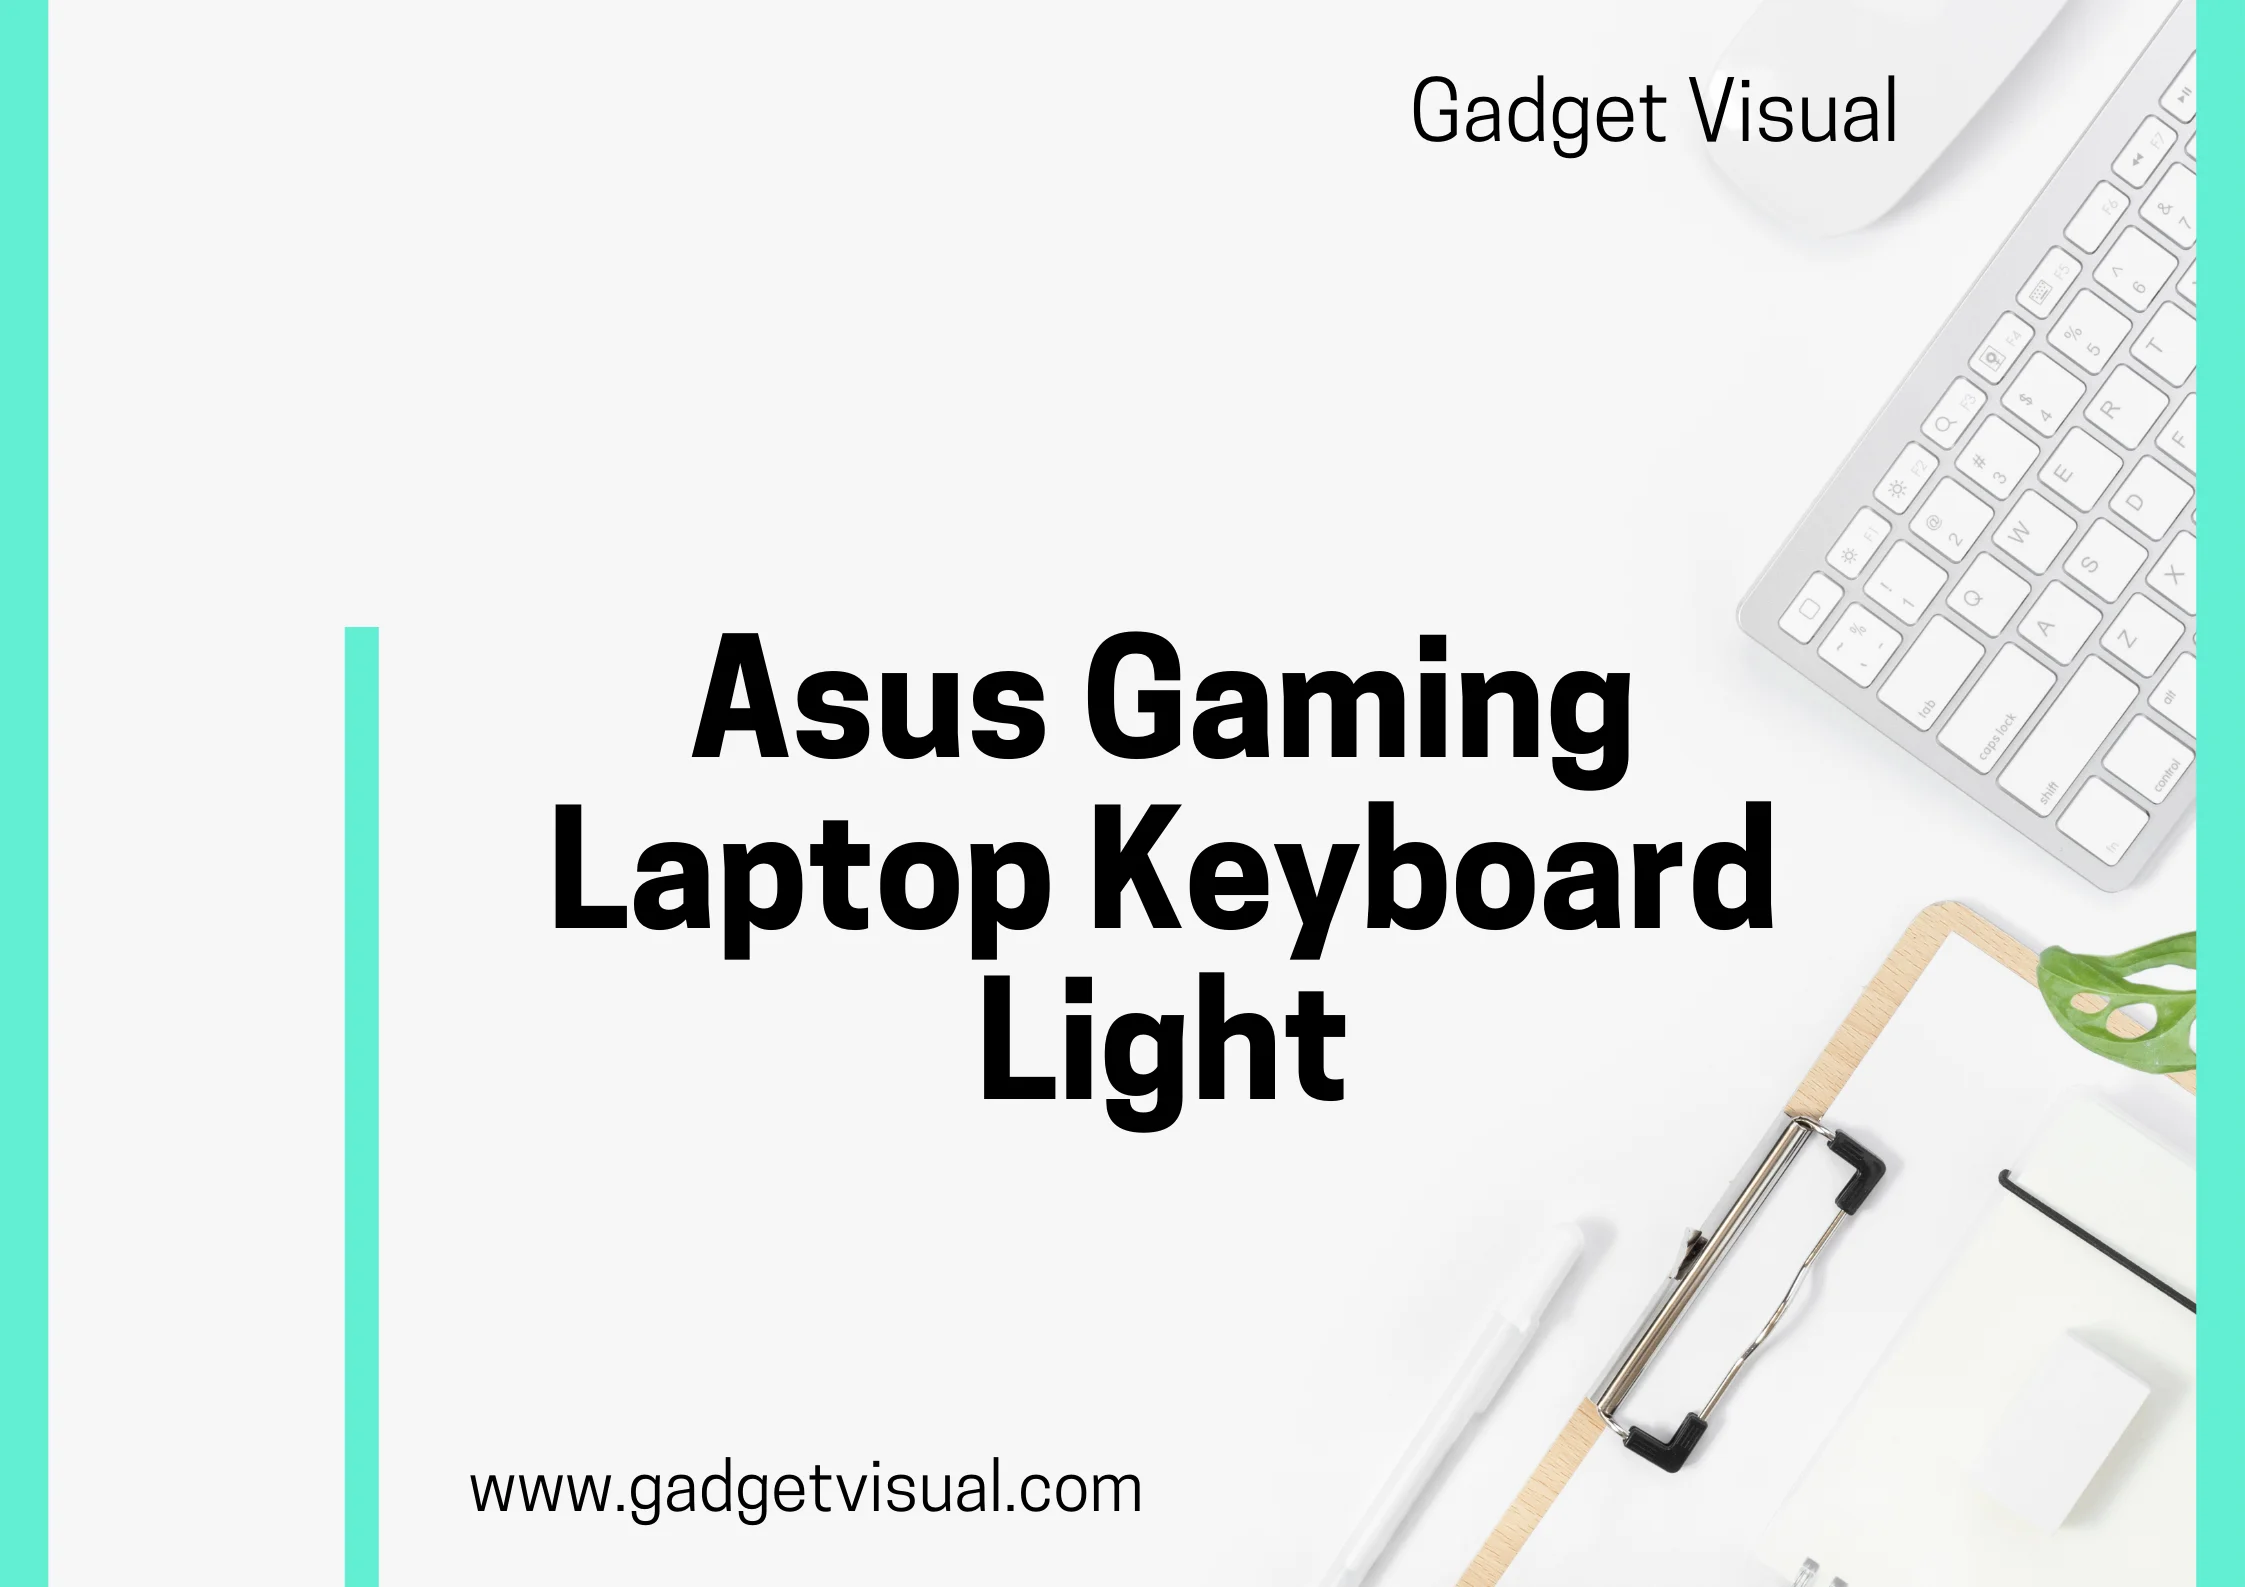 asus gaming laptop keyboard light